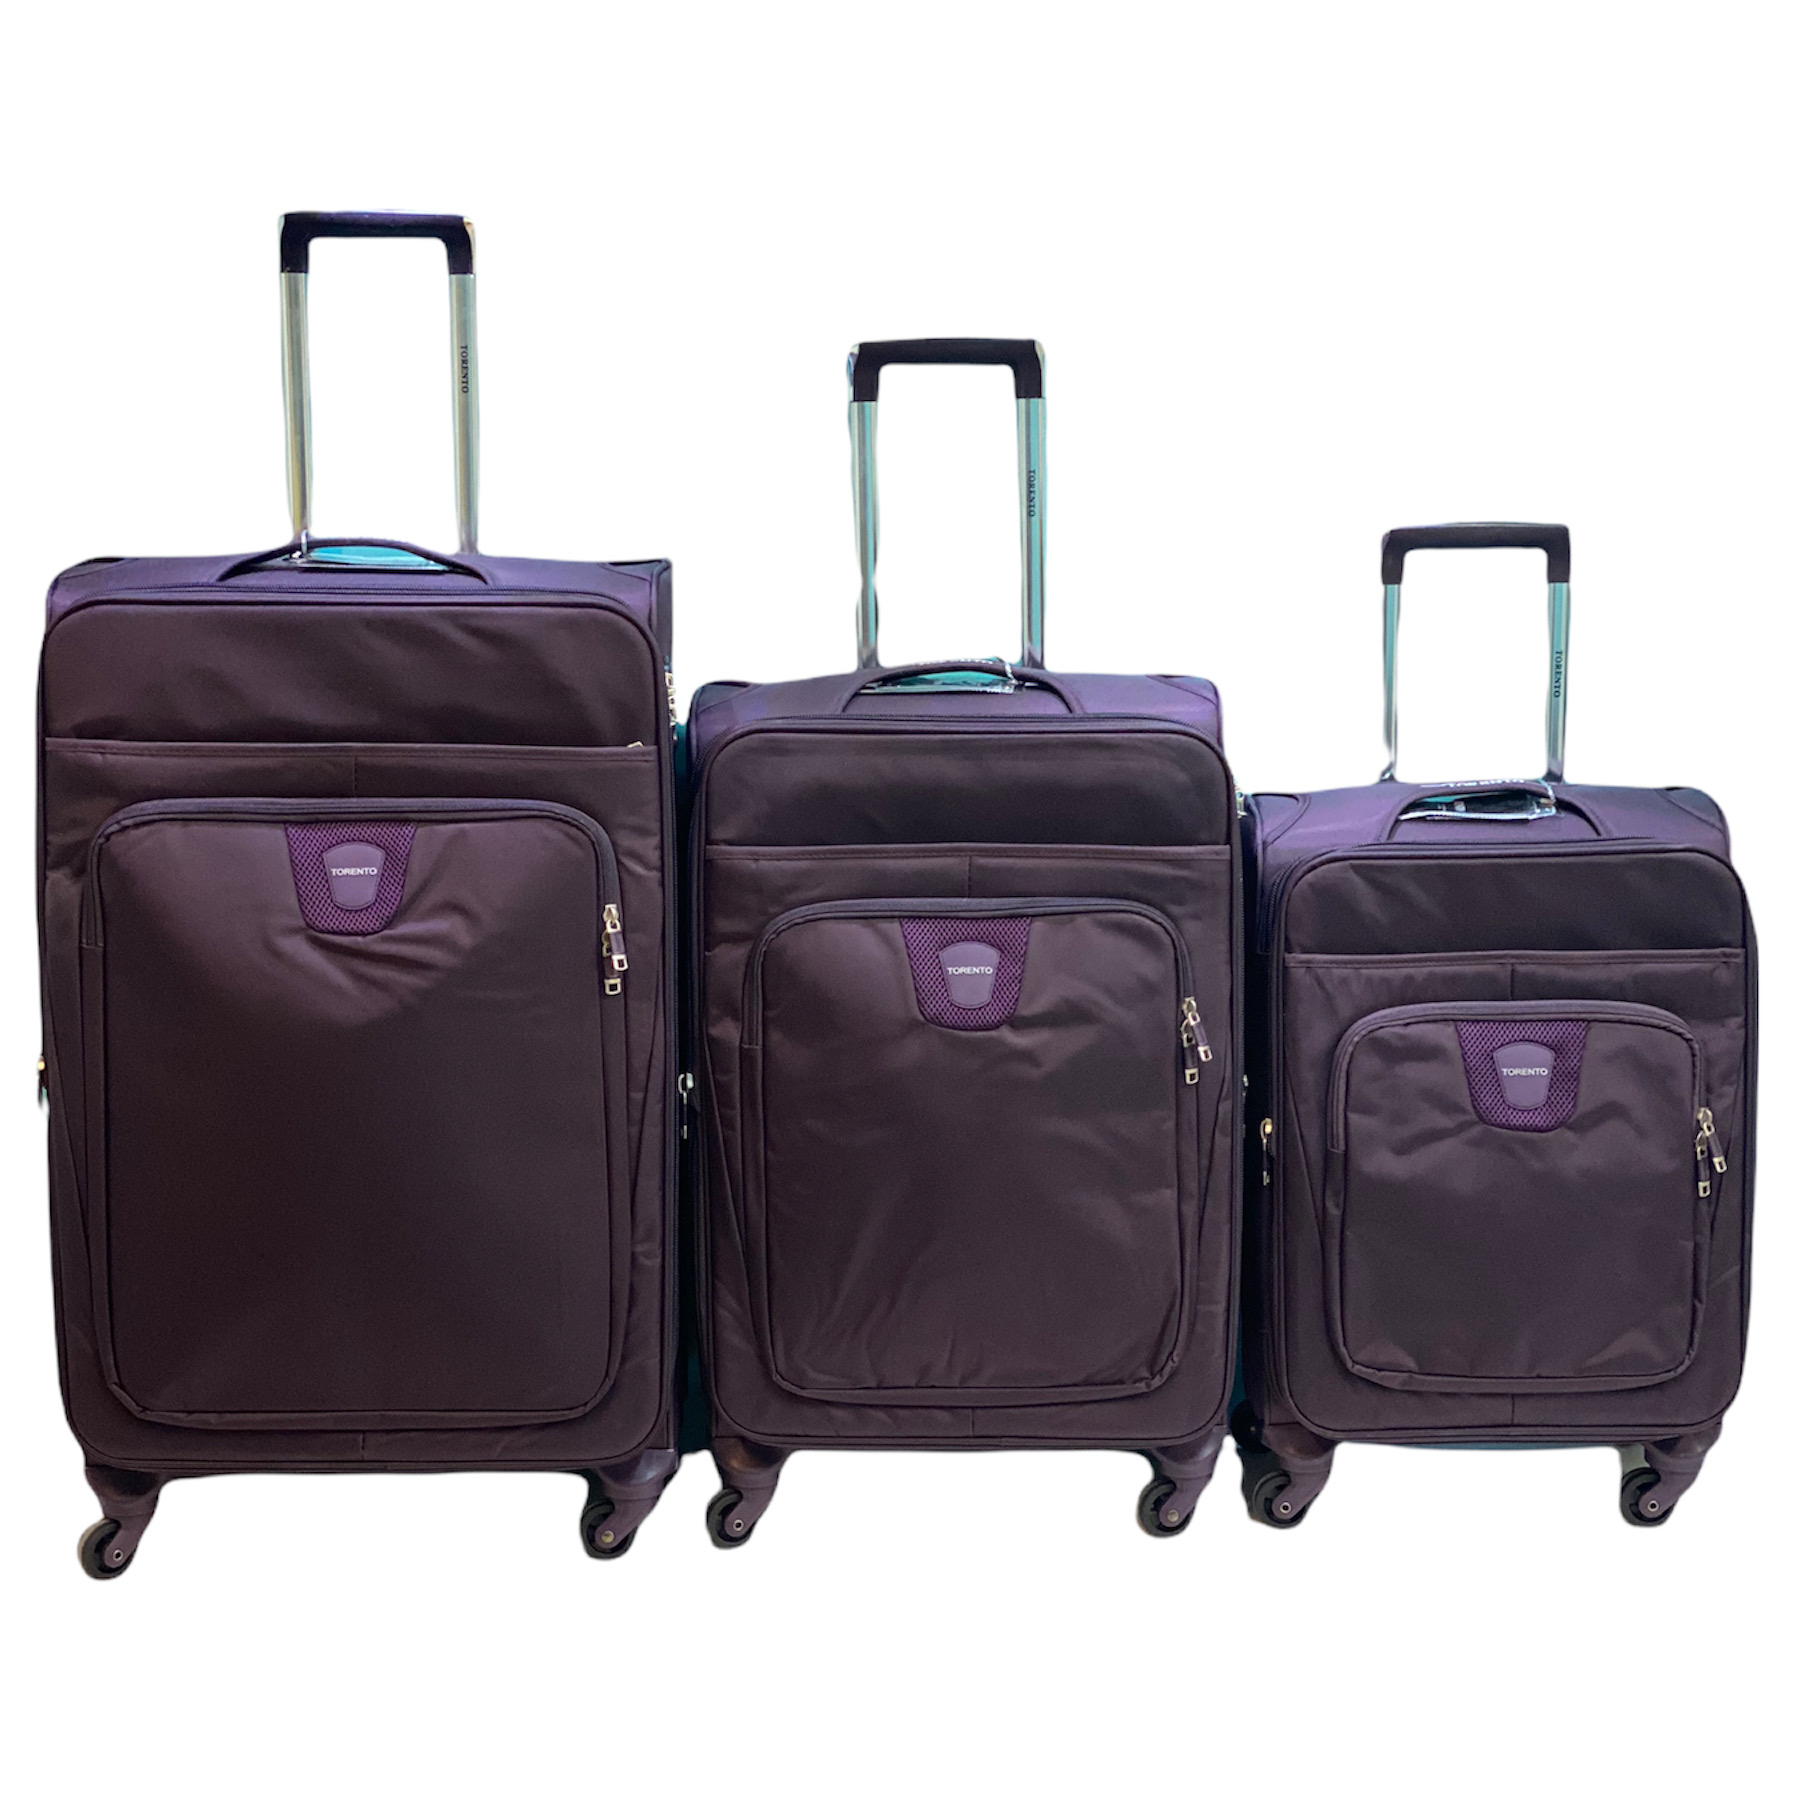 مجموعه سه عددی چمدان ترنتو مدل 101391